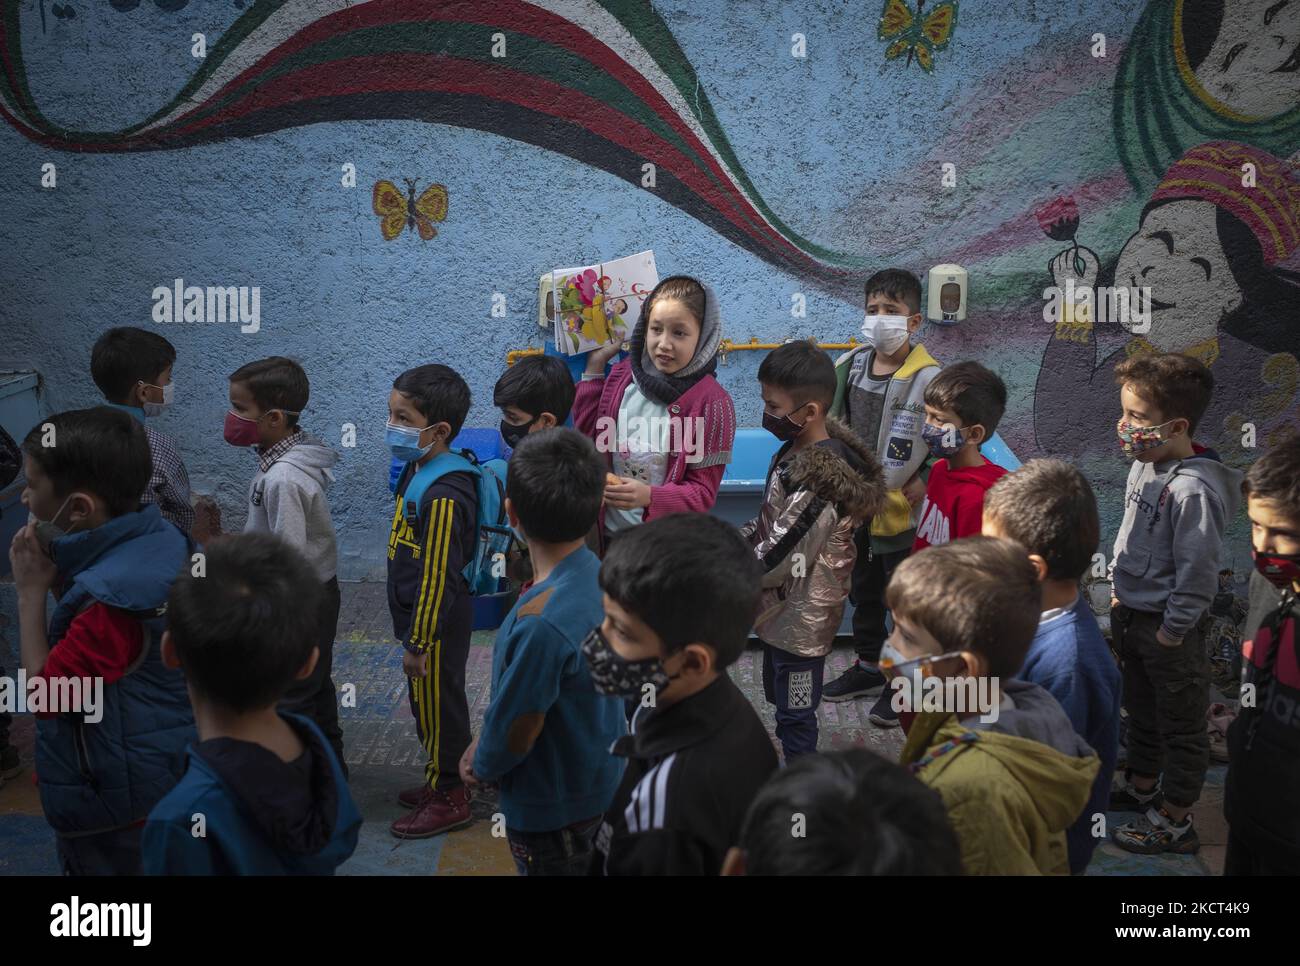 Una studentessa afghana rifugiata porta con sé i suoi libri scolastici come studenti rifugiati che si allineano per ricevere libri scolastici alla scuola di Farhang nel primo giorno del nuovo anno accademico? Nel sud di Teheran il 1 novembre 2021. La scuola di Farhang è stata fondata nel 2000 dal rifugiato afgano Nader Mousavi che si è laureato in sociologia presso l'Università di Teheran, per i bambini rifugiati afghani, E ora due anni dopo l’inizio dell’epidemia COVID-19 in Iran, dove la scuola operava a tempo parziale, ha iniziato a funzionare a tempo pieno e le scolaresche e gli scolari afghani possono frequentare la scuola. F Foto Stock